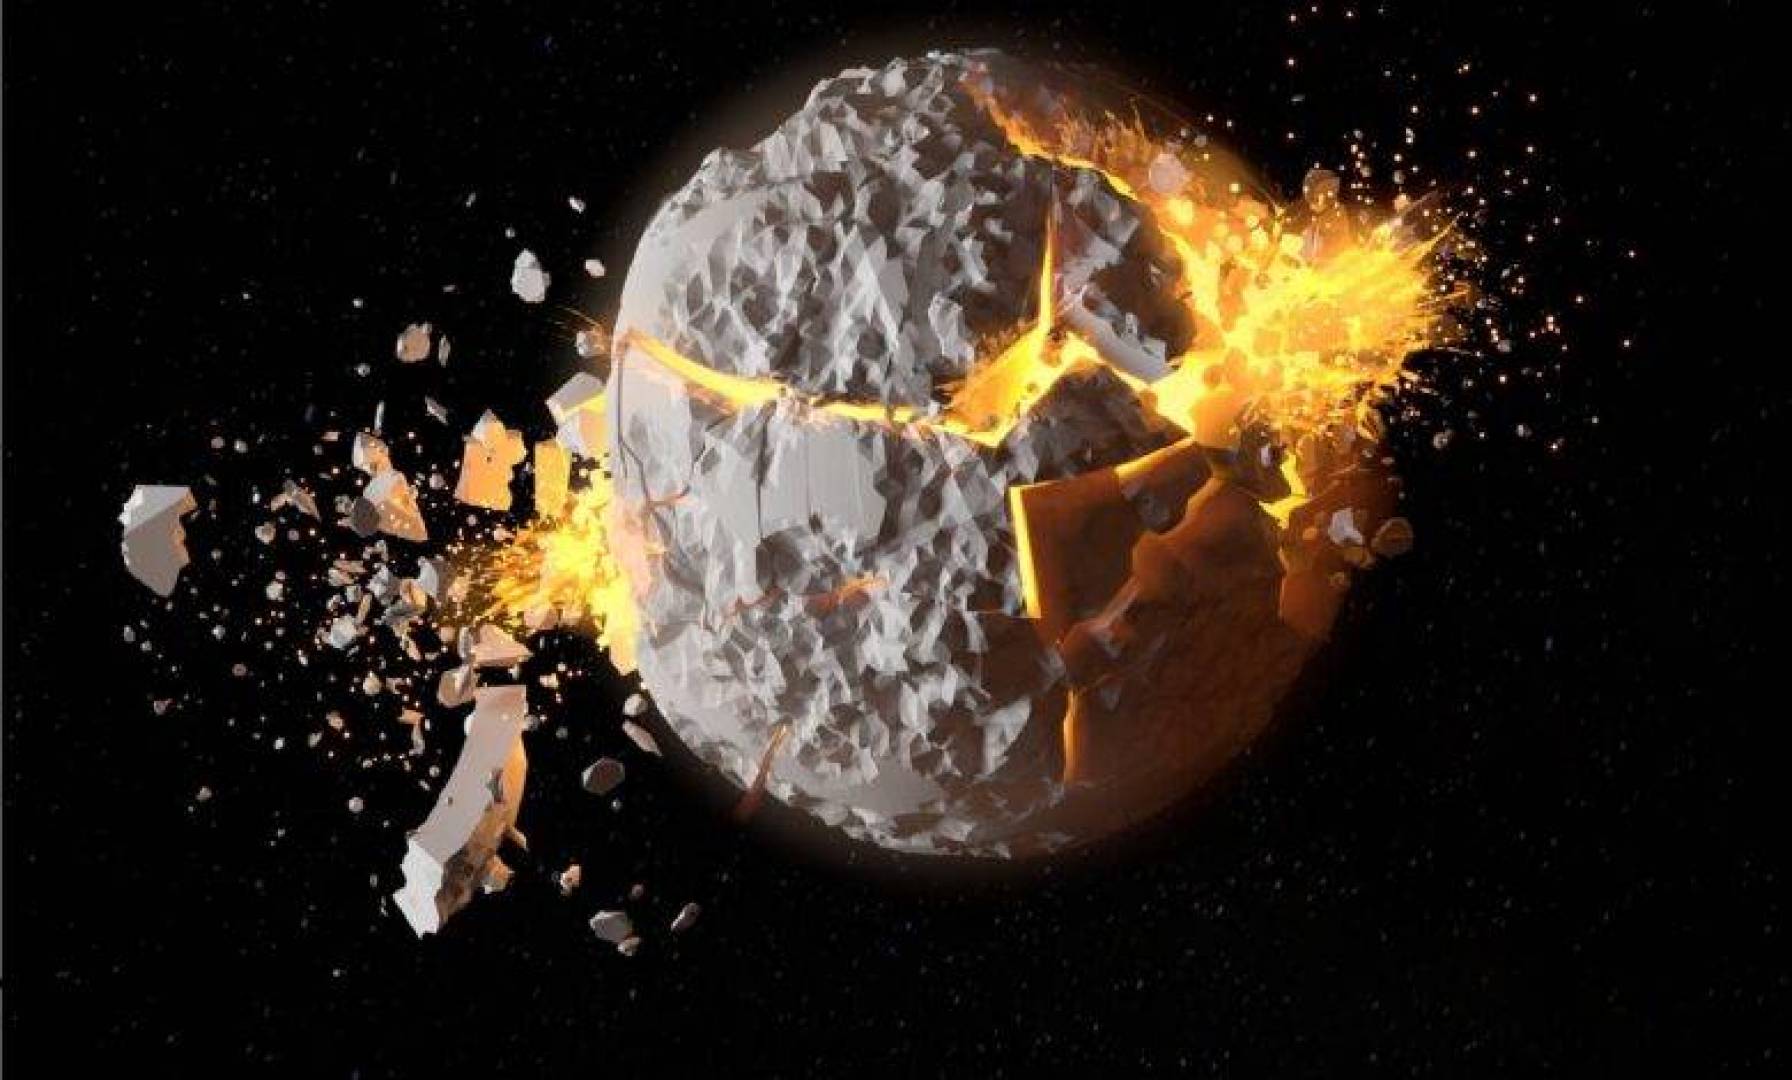 أستاذ جامعي يدعو لتفجير القمر بسلاح نووي لحل الكثير من المشكلات الأرضية